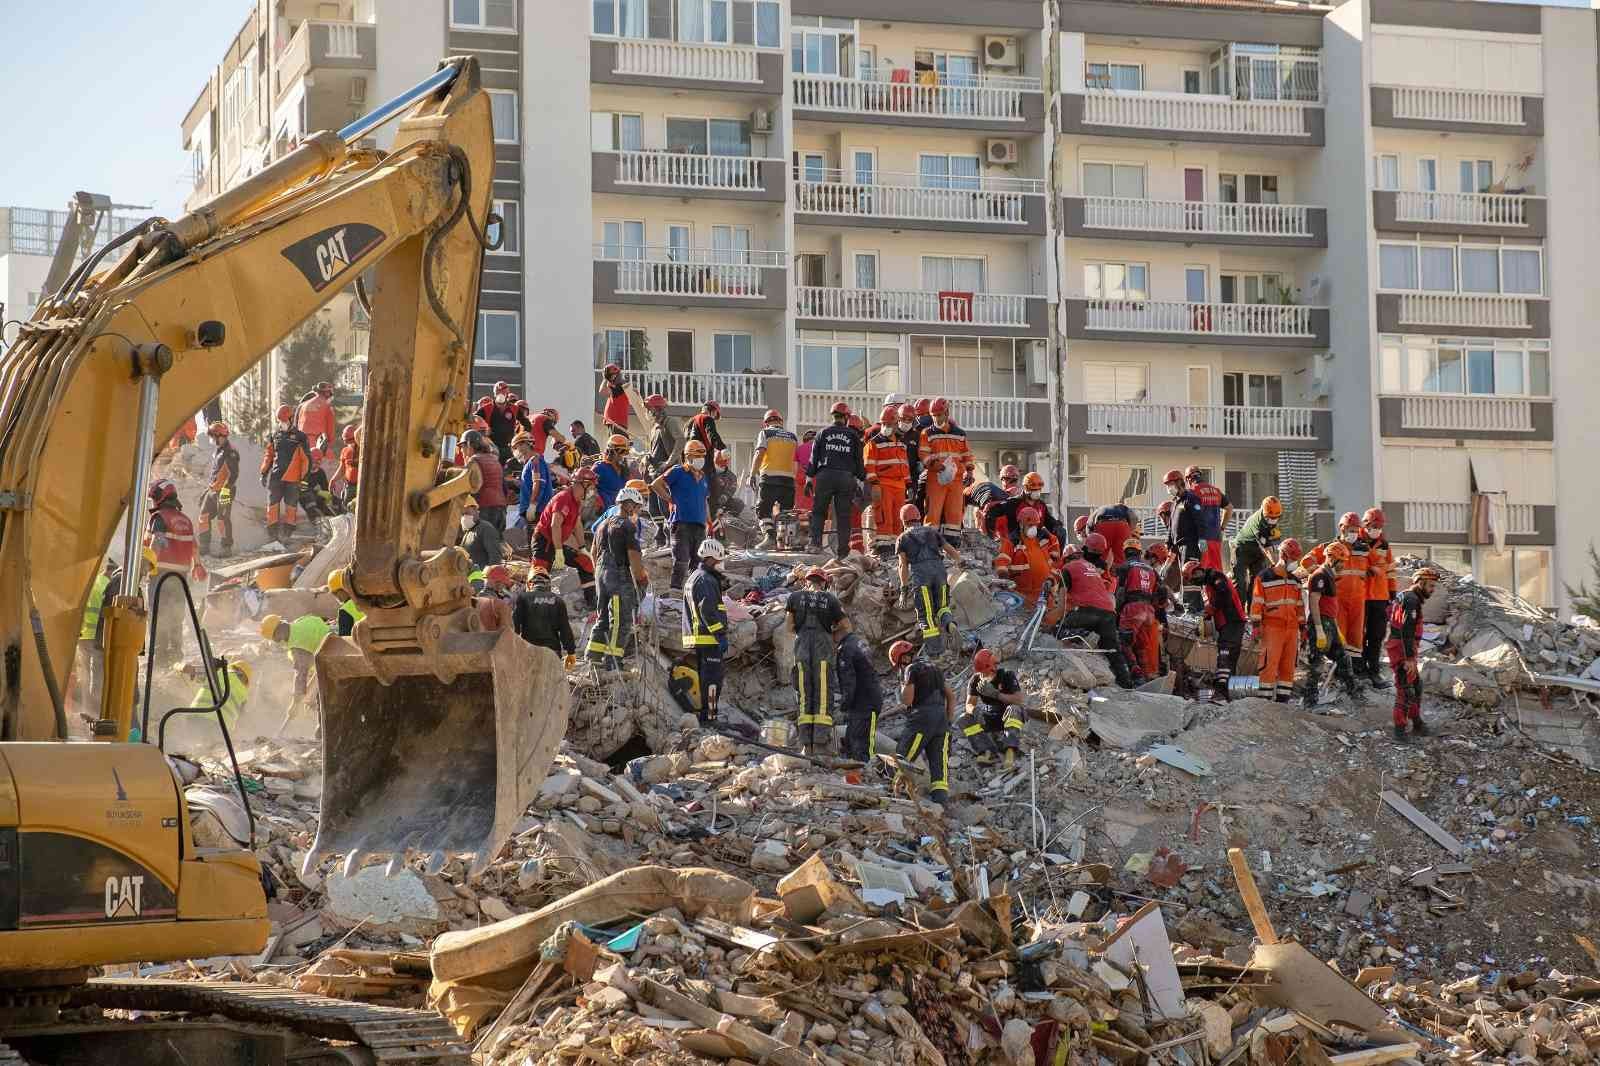 İzmir’in deprem master planı güncellenmeli uyarısı #izmir